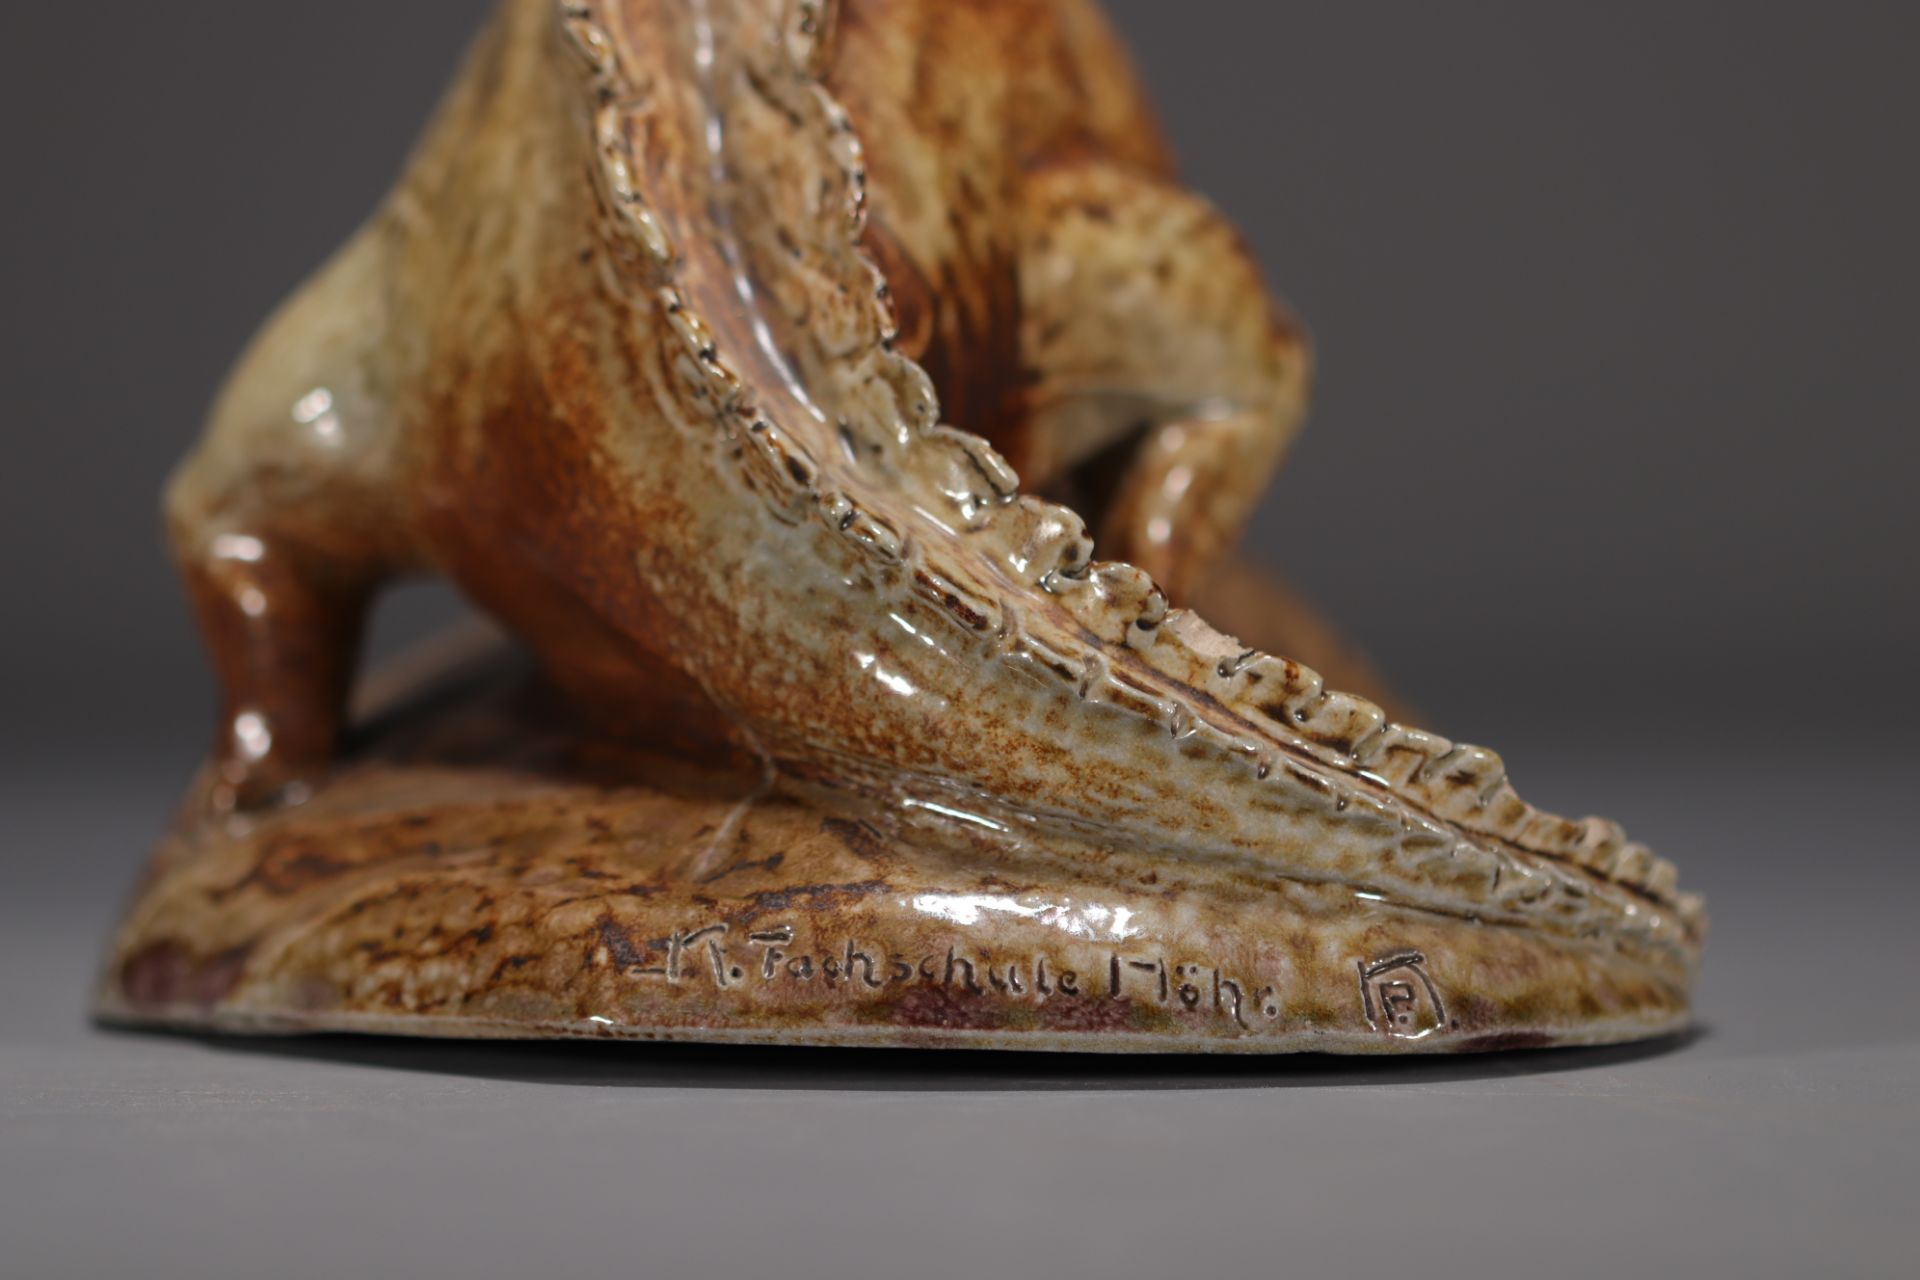 K. FACHSCHULE "Dinosaur" Sculpture in glazed stoneware. - Bild 6 aus 6